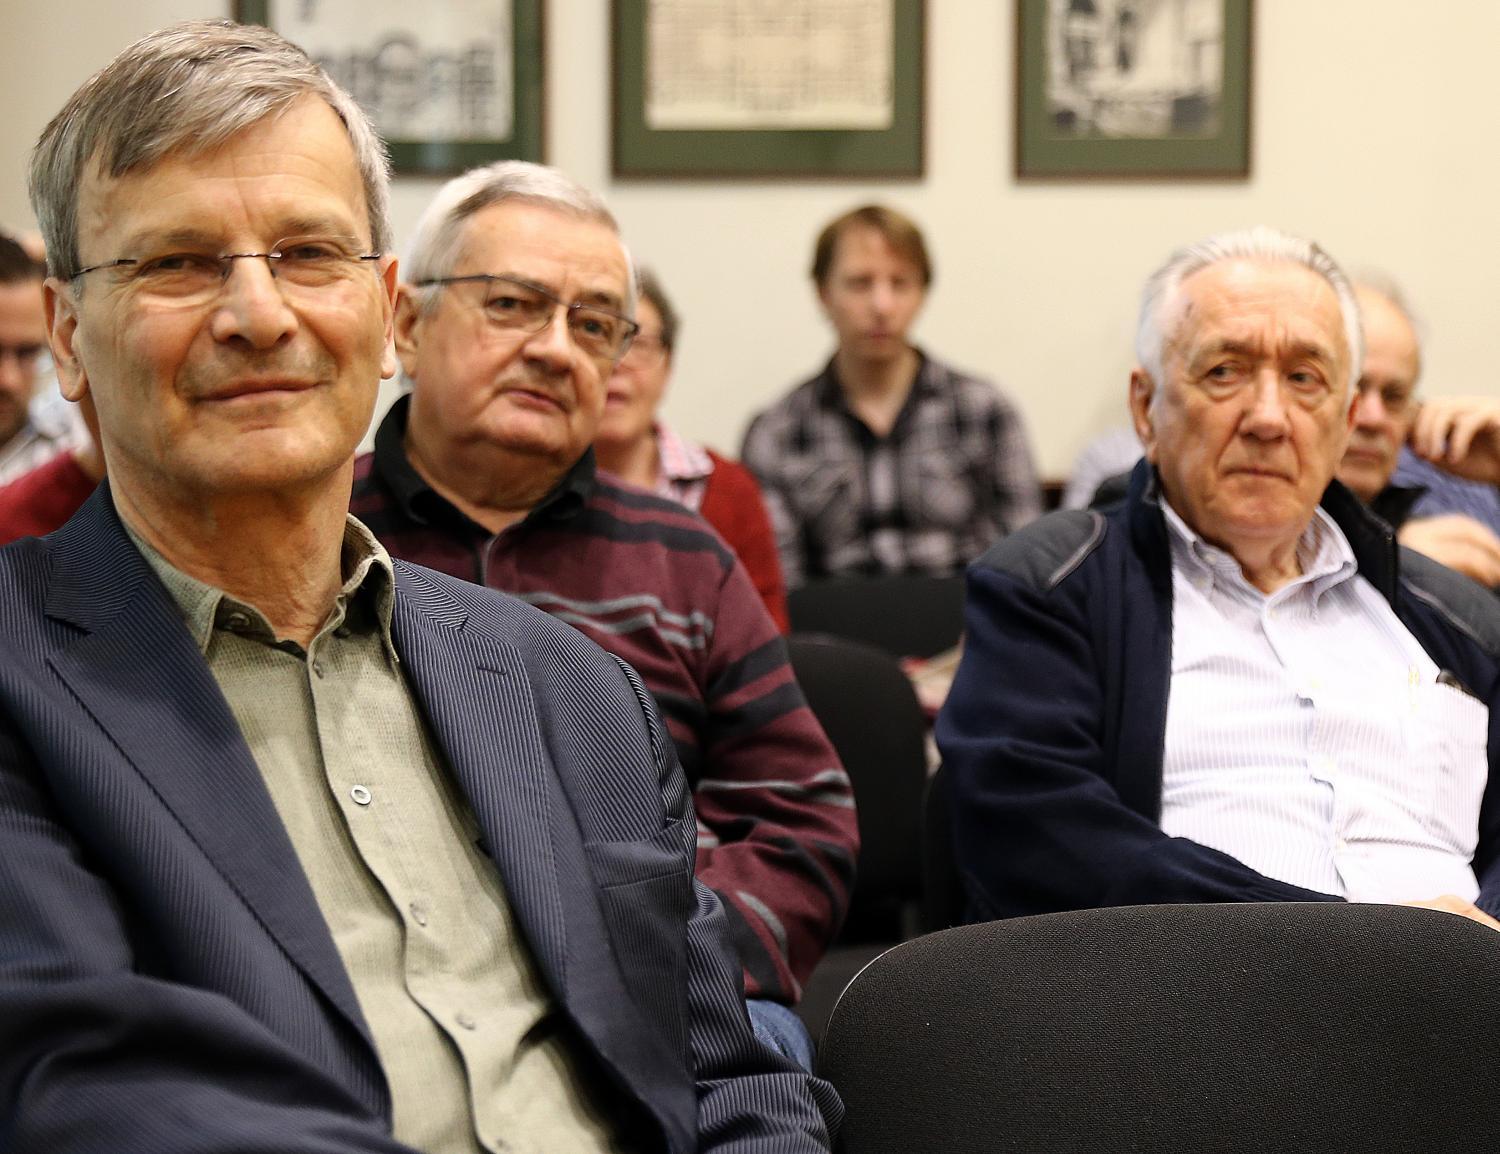 Demszky Gábor korábbi liberális főpolgármester és Kovács László szocialista ex-külügyminiszter a közönség soraiban